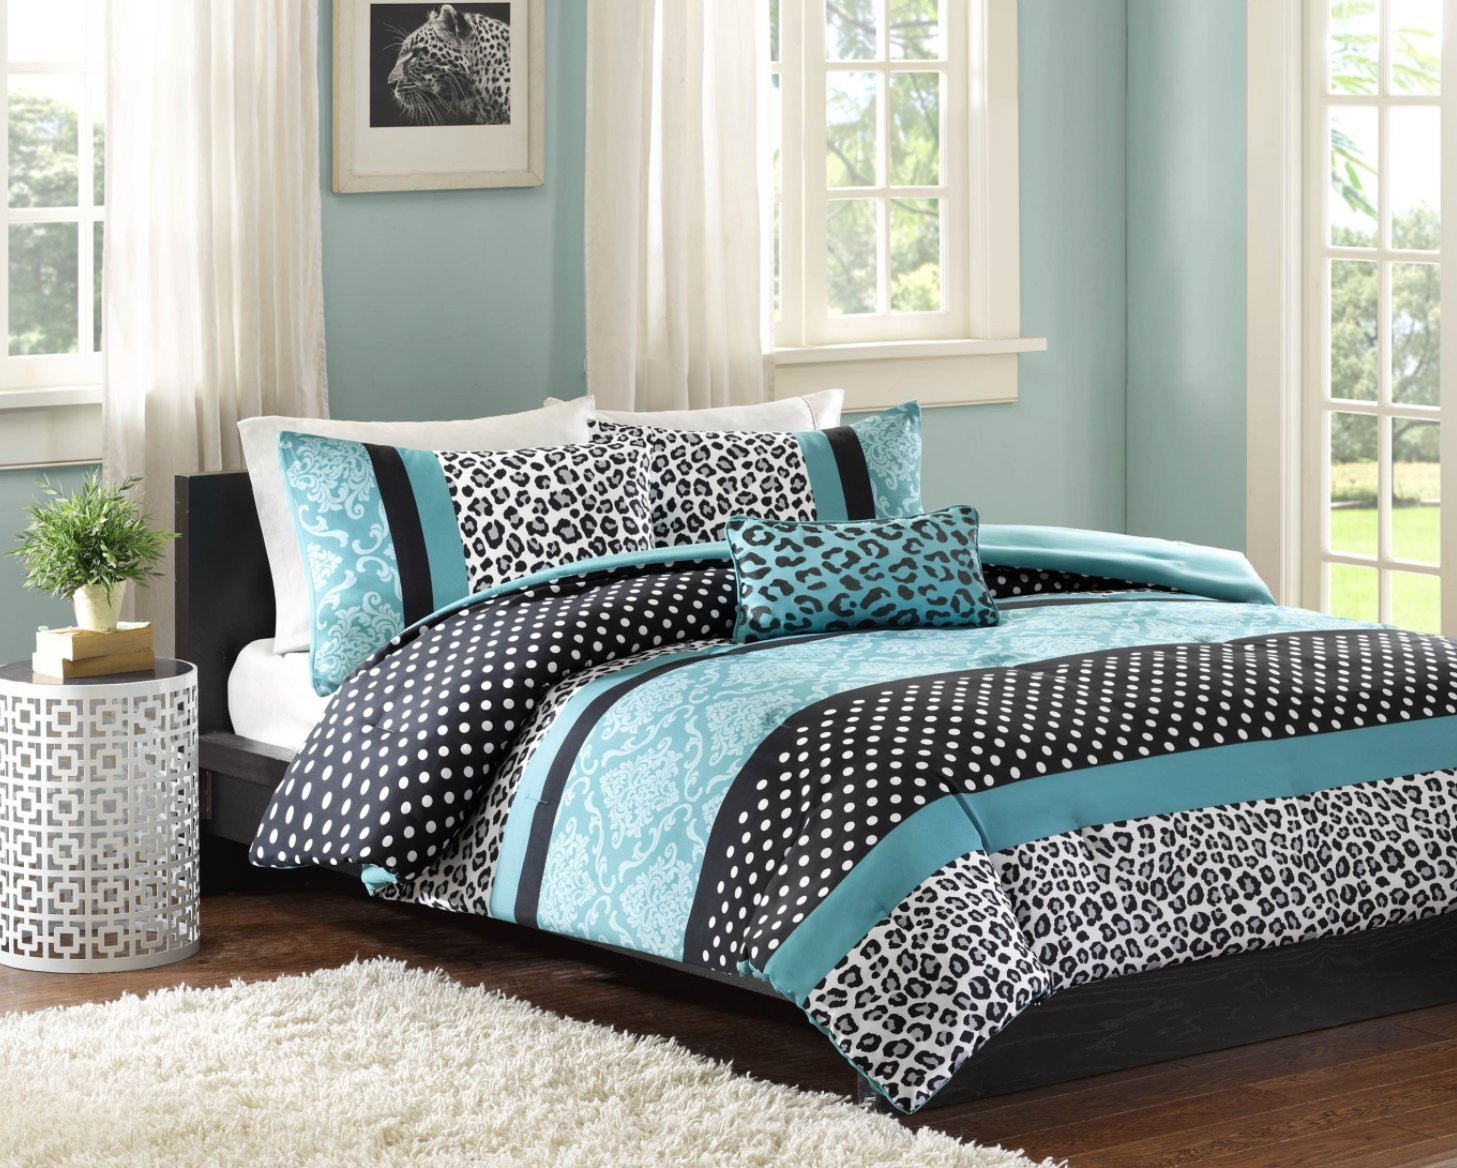 Walmart Girl Bedroom Sets
 forter Bed Set Teen Bedding Modern Teal Black Animal